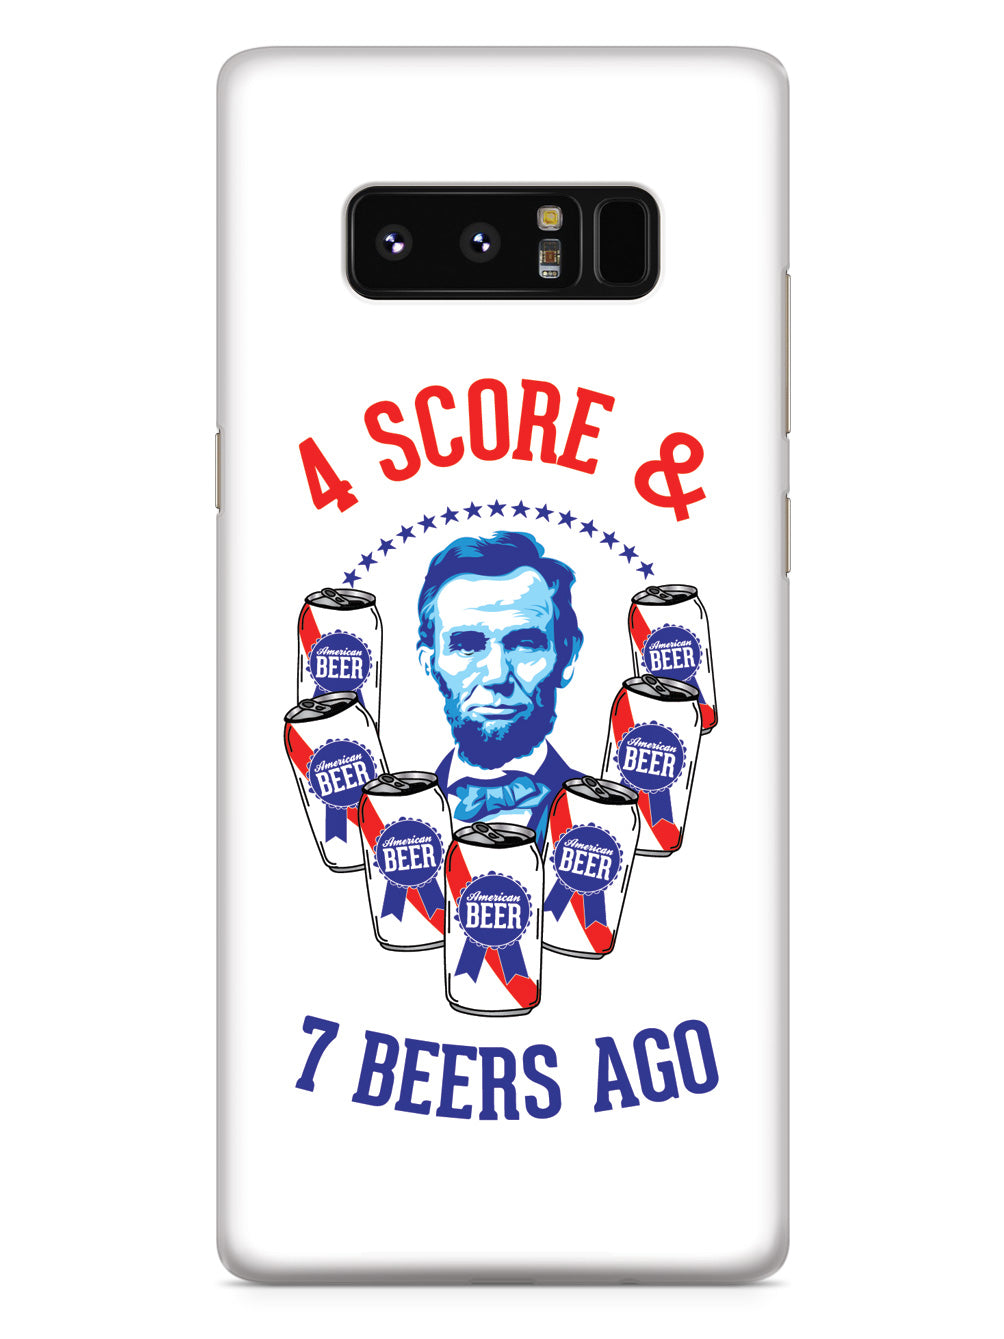 Four Score & 7 Beers Ago - Patriotic Case